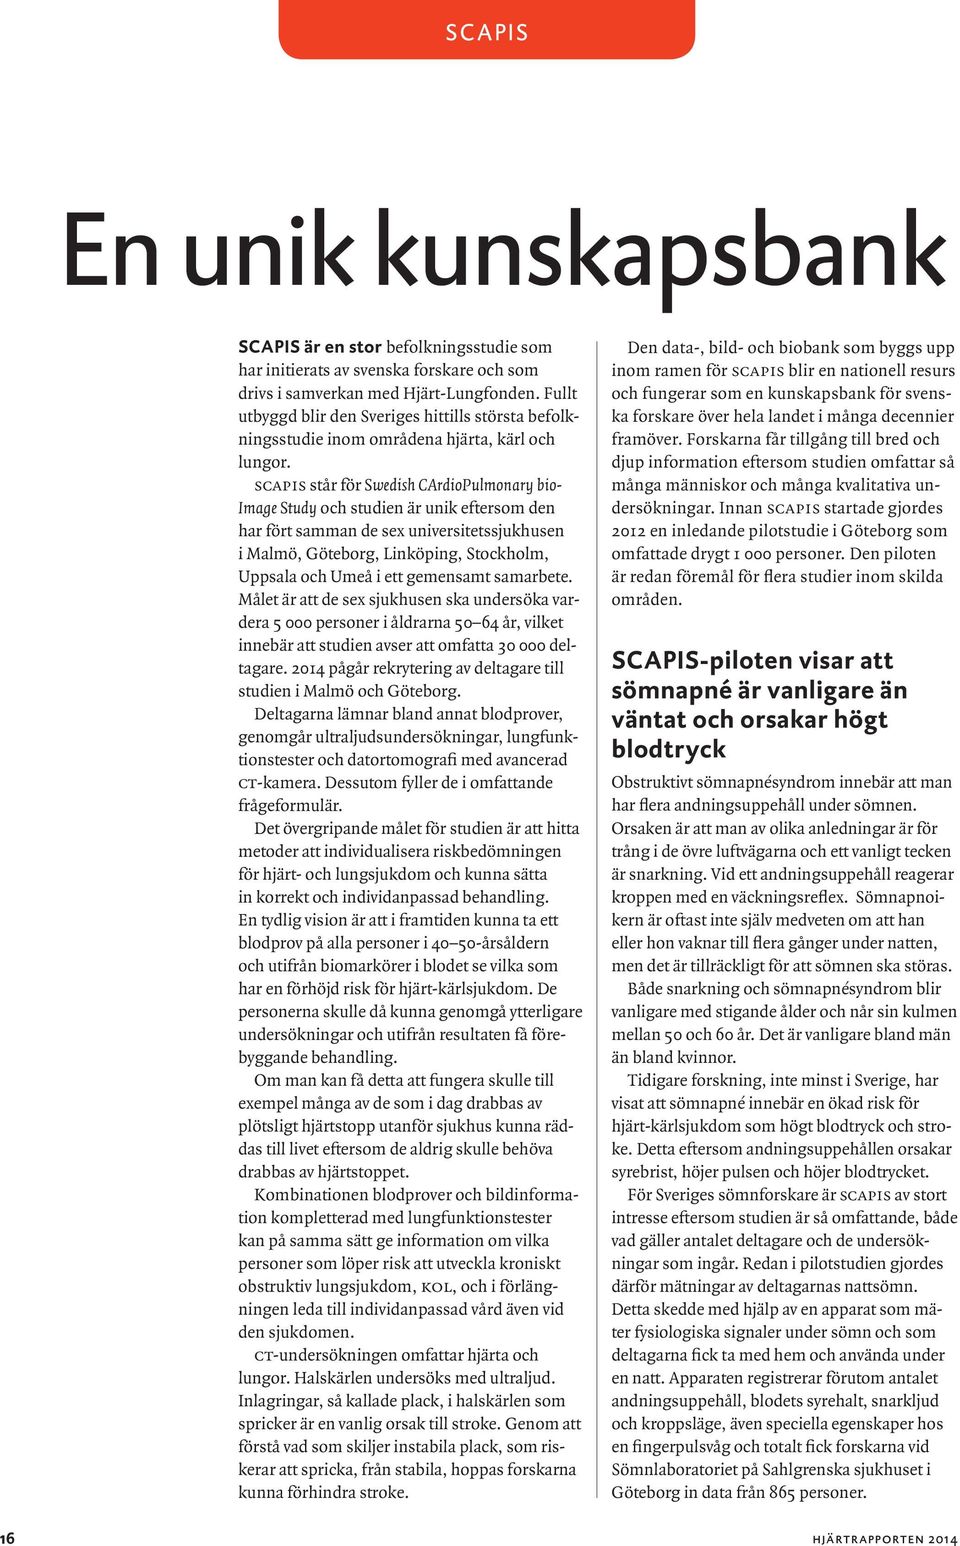 scapis står för Swedish C ArdioPulmonary bio- Image Study och studien är unik eftersom den har fört samman de sex universitetssjuk husen i Malmö, Göteborg, Linköping, Stockholm, Uppsala och Umeå i